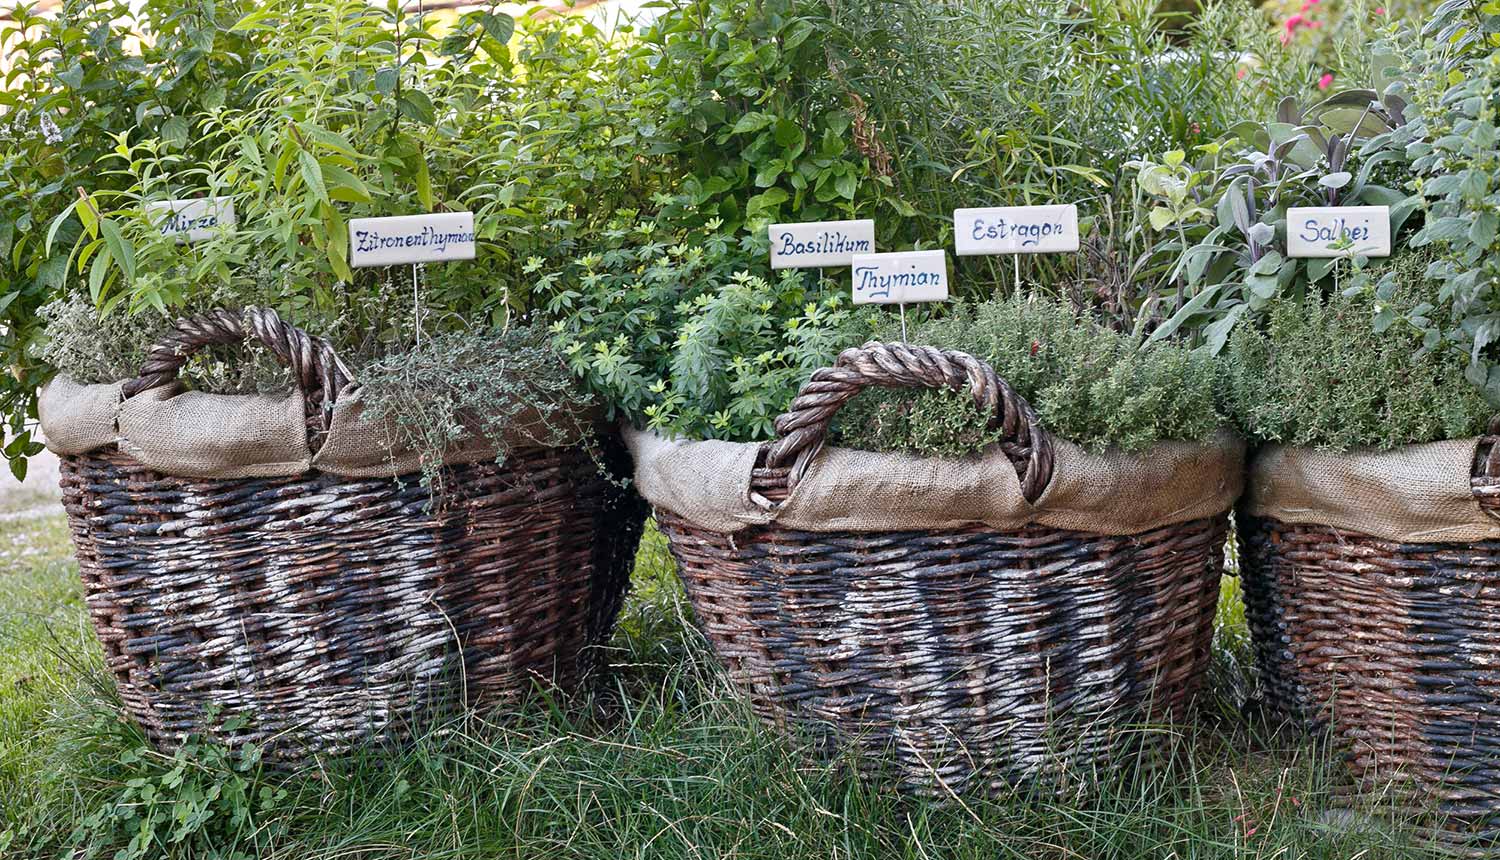 Mediterranean herbs at the Gasserhof